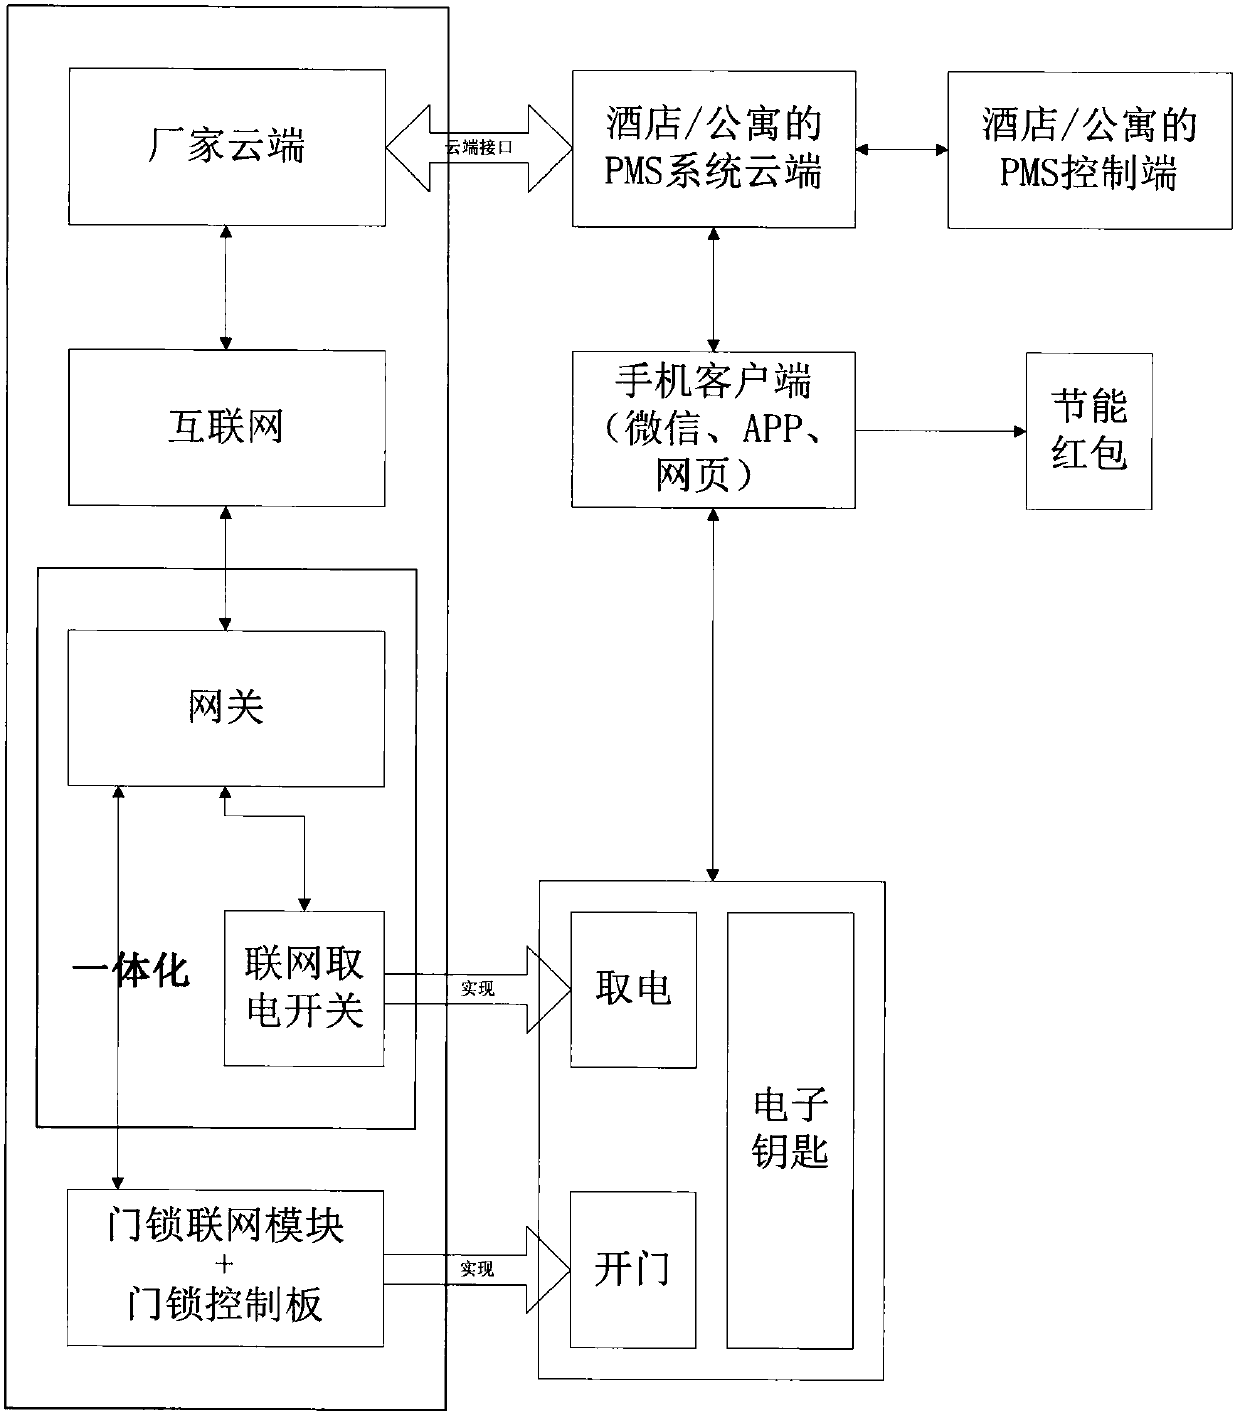 A WeChat door opening method